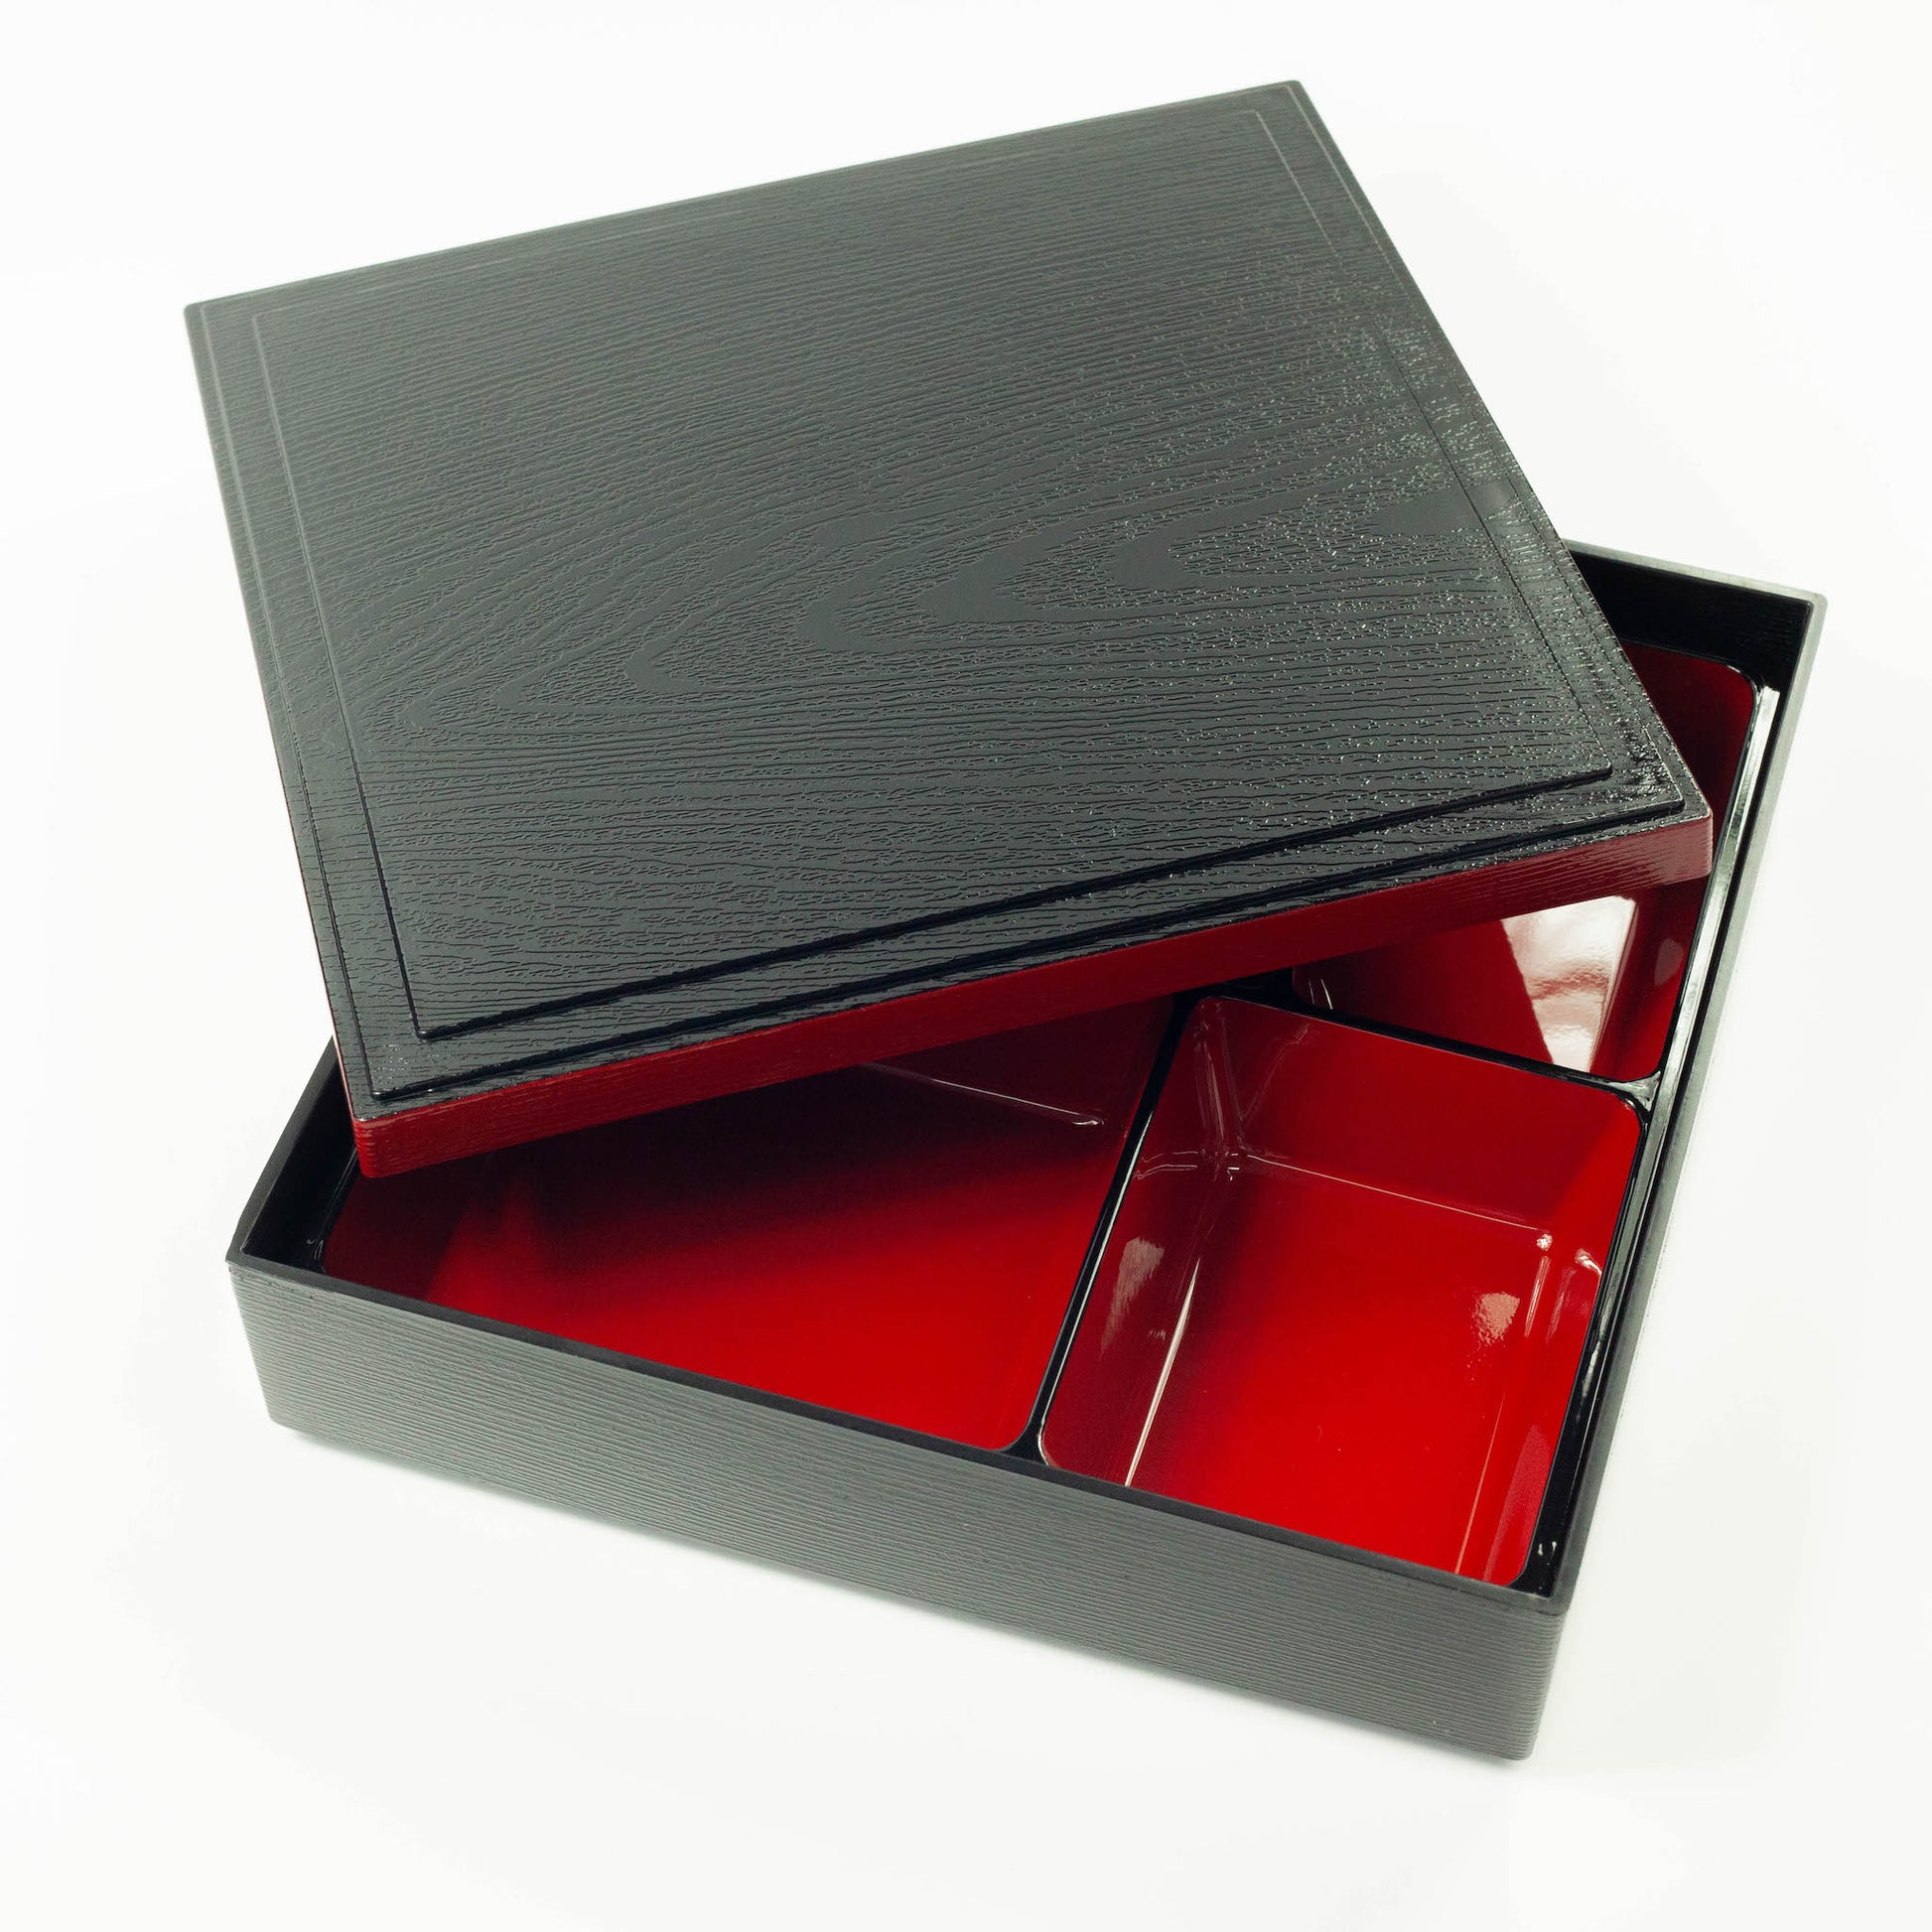 The Shokado Kaga Bento Box | Restaurant Style Bento Box